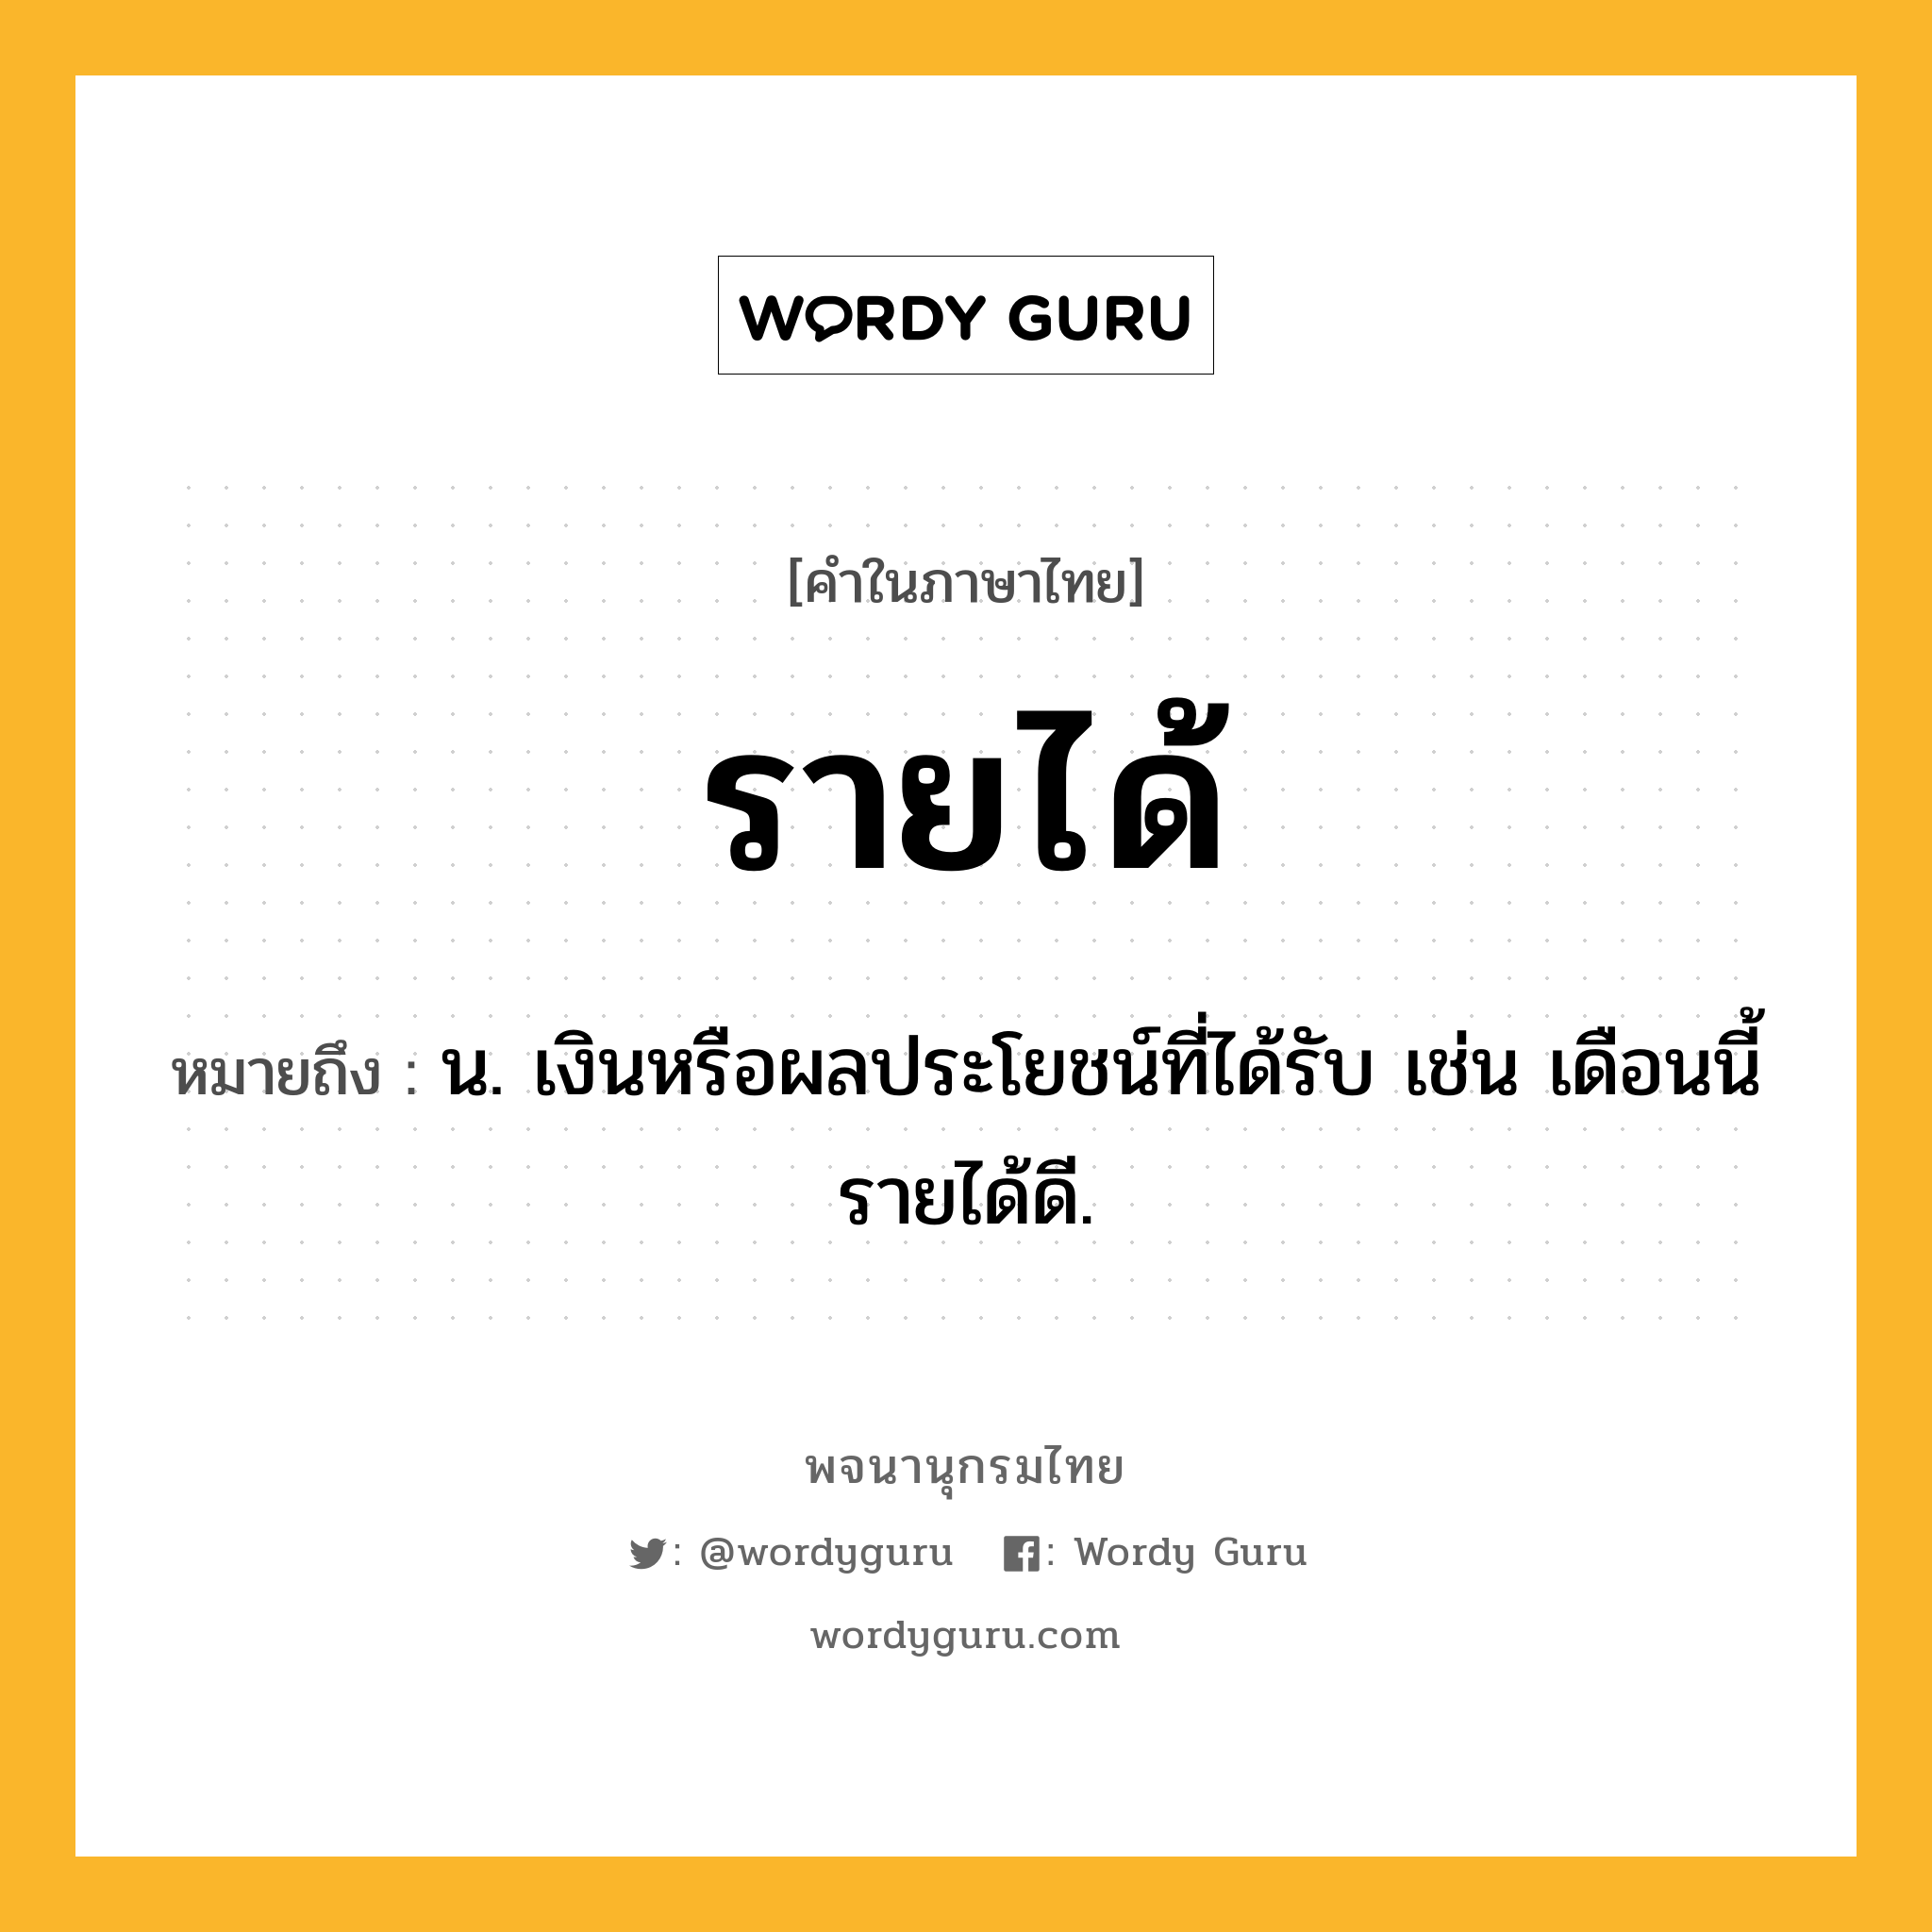 รายได้ หมายถึงอะไร?, คำในภาษาไทย รายได้ หมายถึง น. เงินหรือผลประโยชน์ที่ได้รับ เช่น เดือนนี้รายได้ดี.